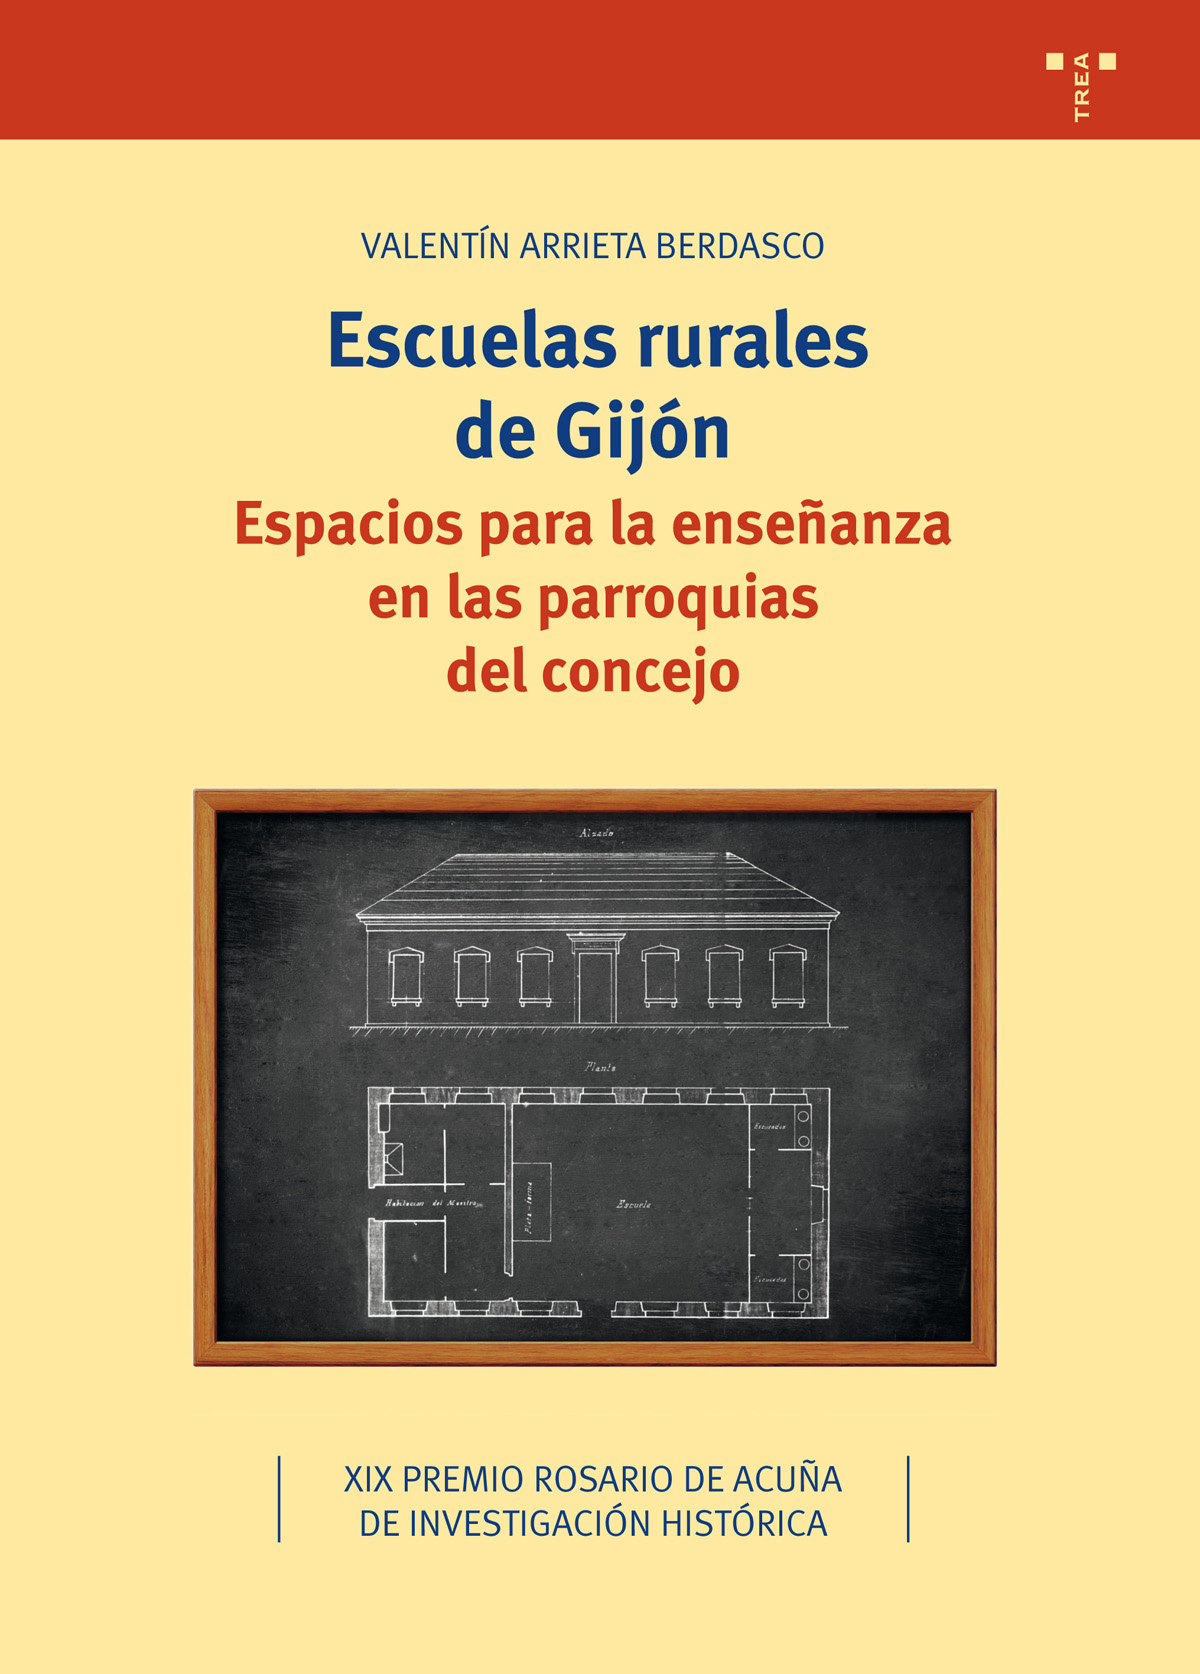 Escuelas rurales de Gijón   «Espacios para la enseñanza en las parroquias del concejo»